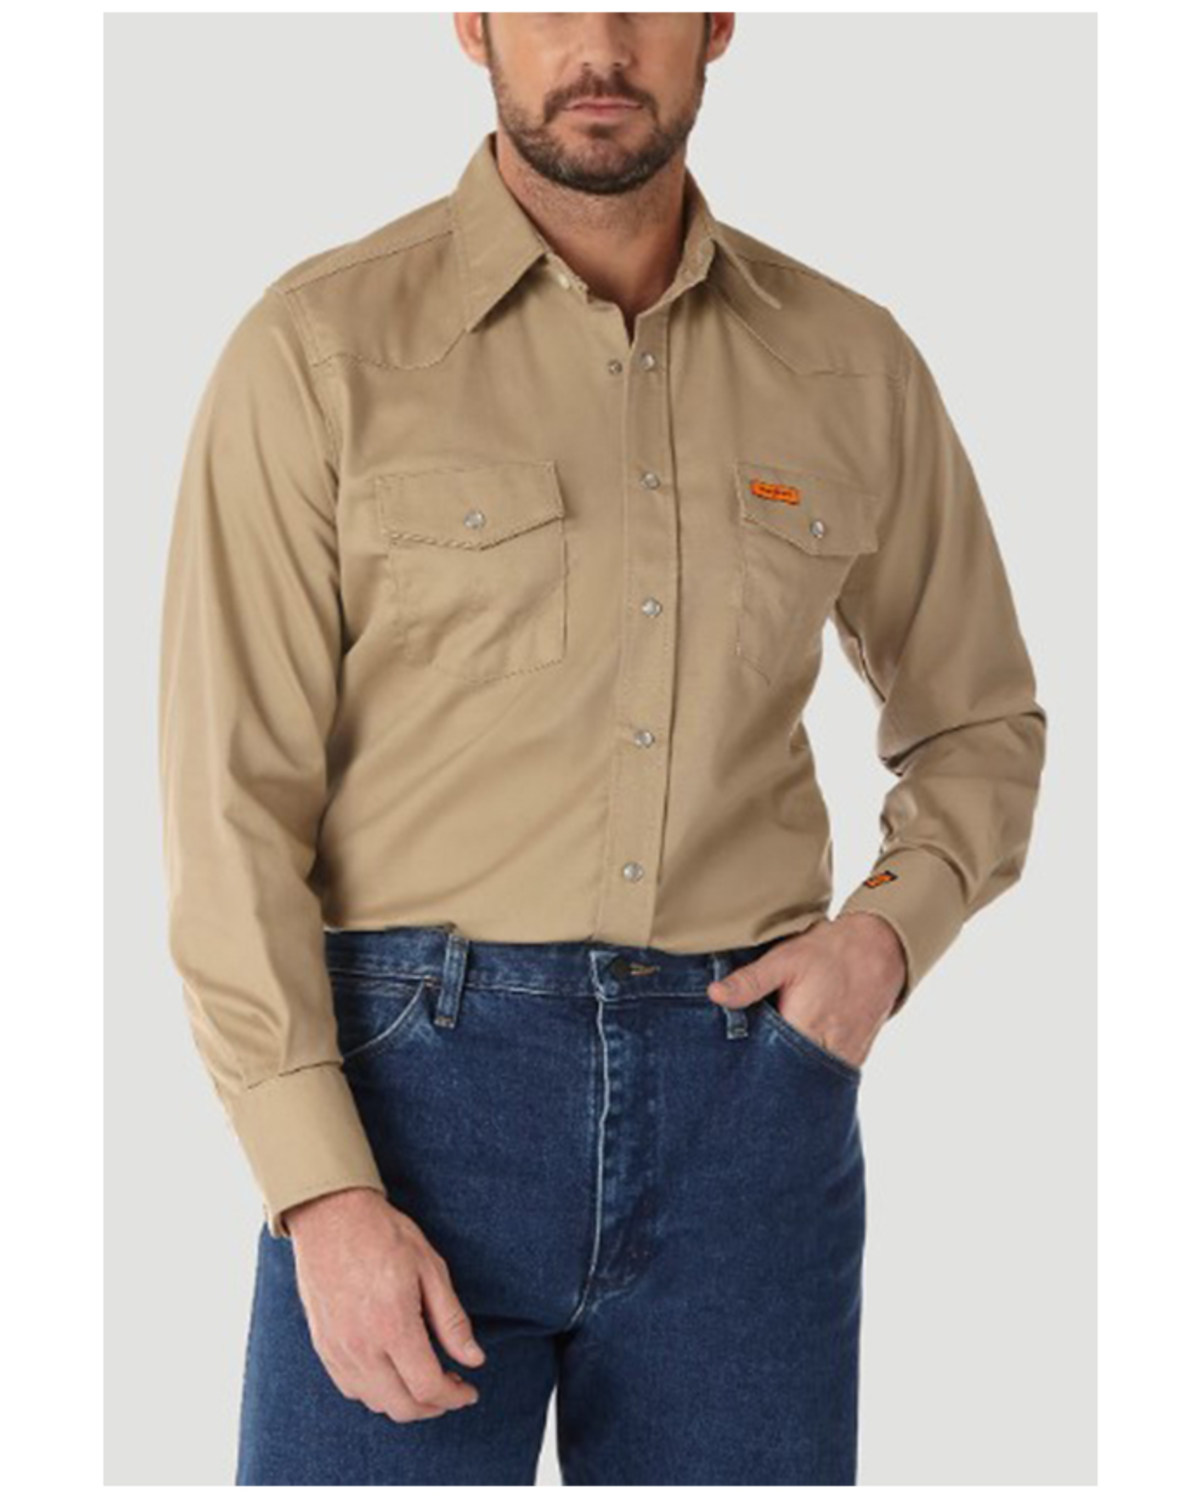 Wrangler Men's FR Long Sleeve Snap Western Work Shirt